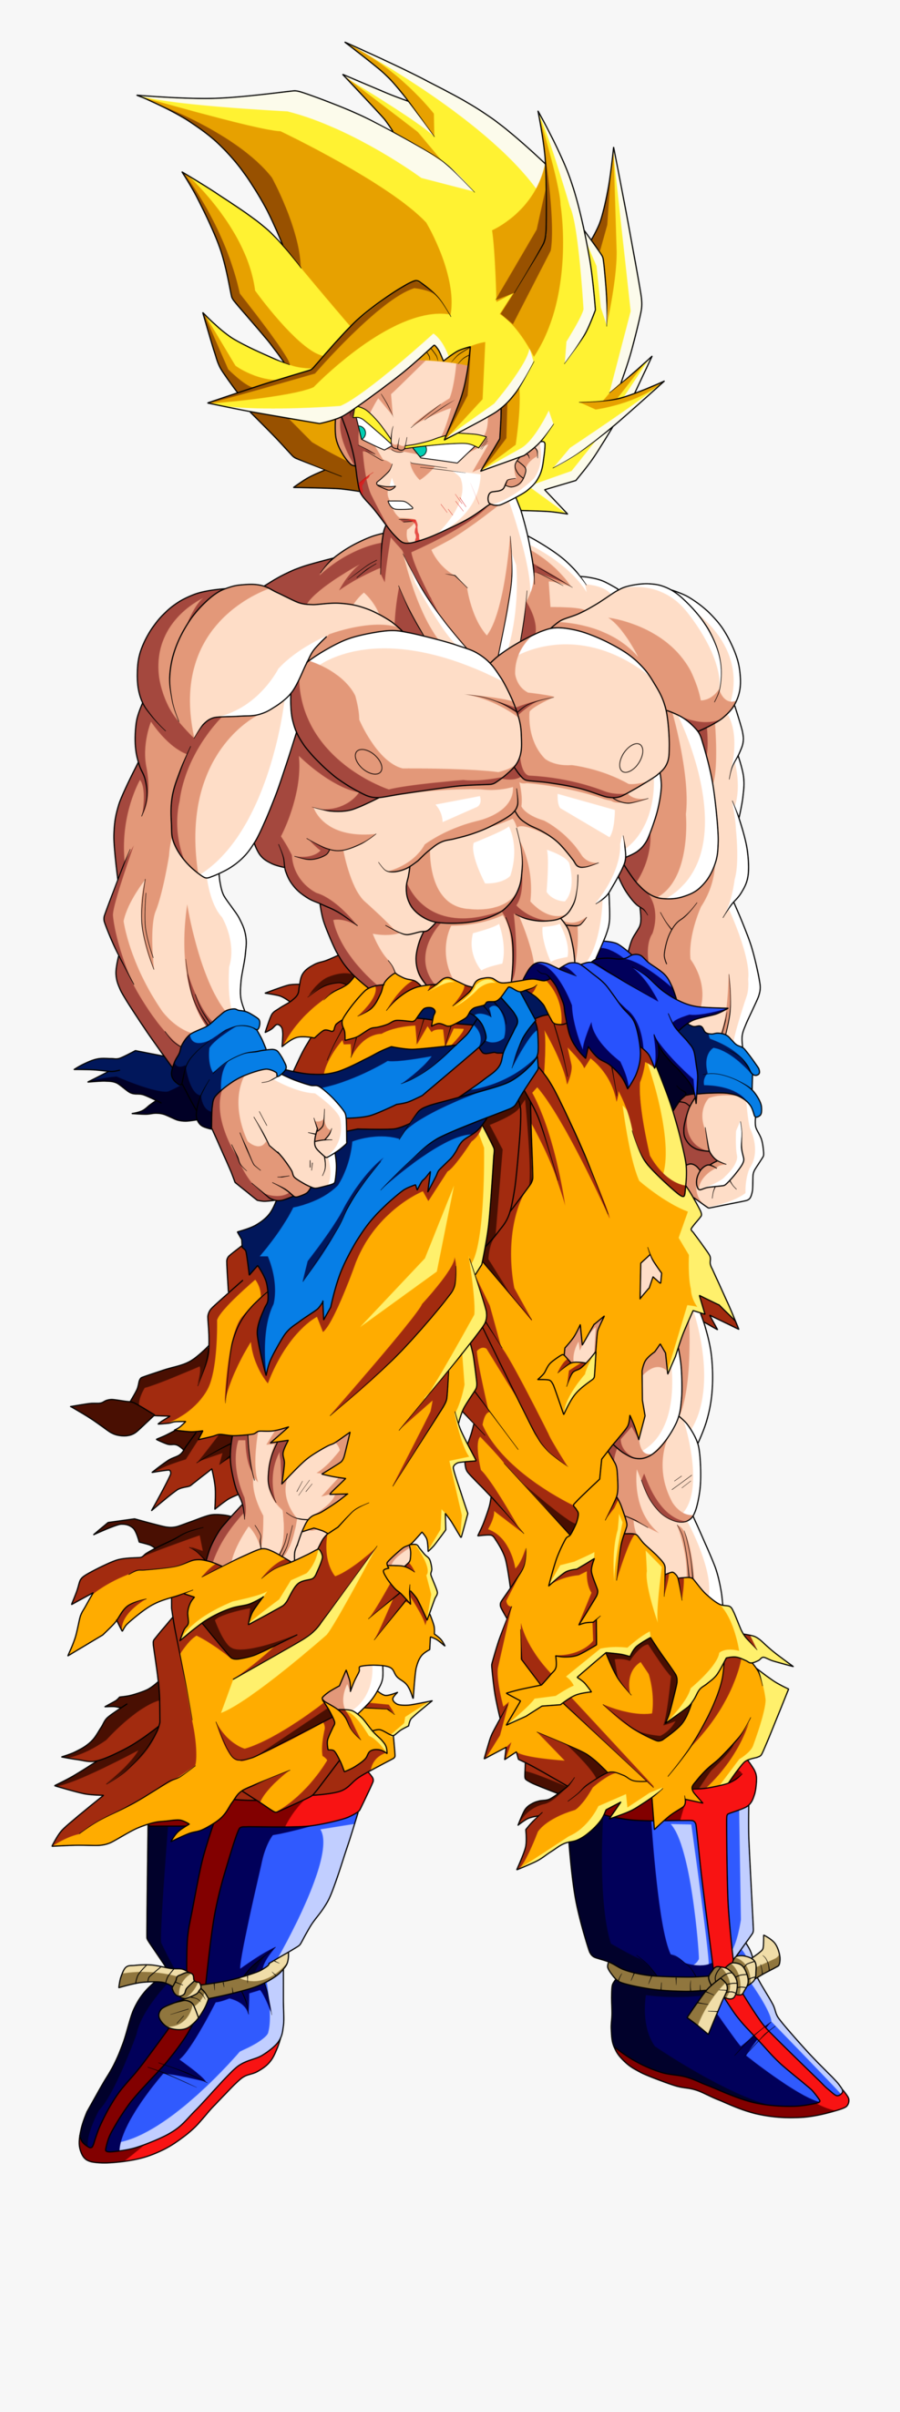 Goku Clipart Gambar - Goku Super Saiyan Muscles, Transparent Clipart